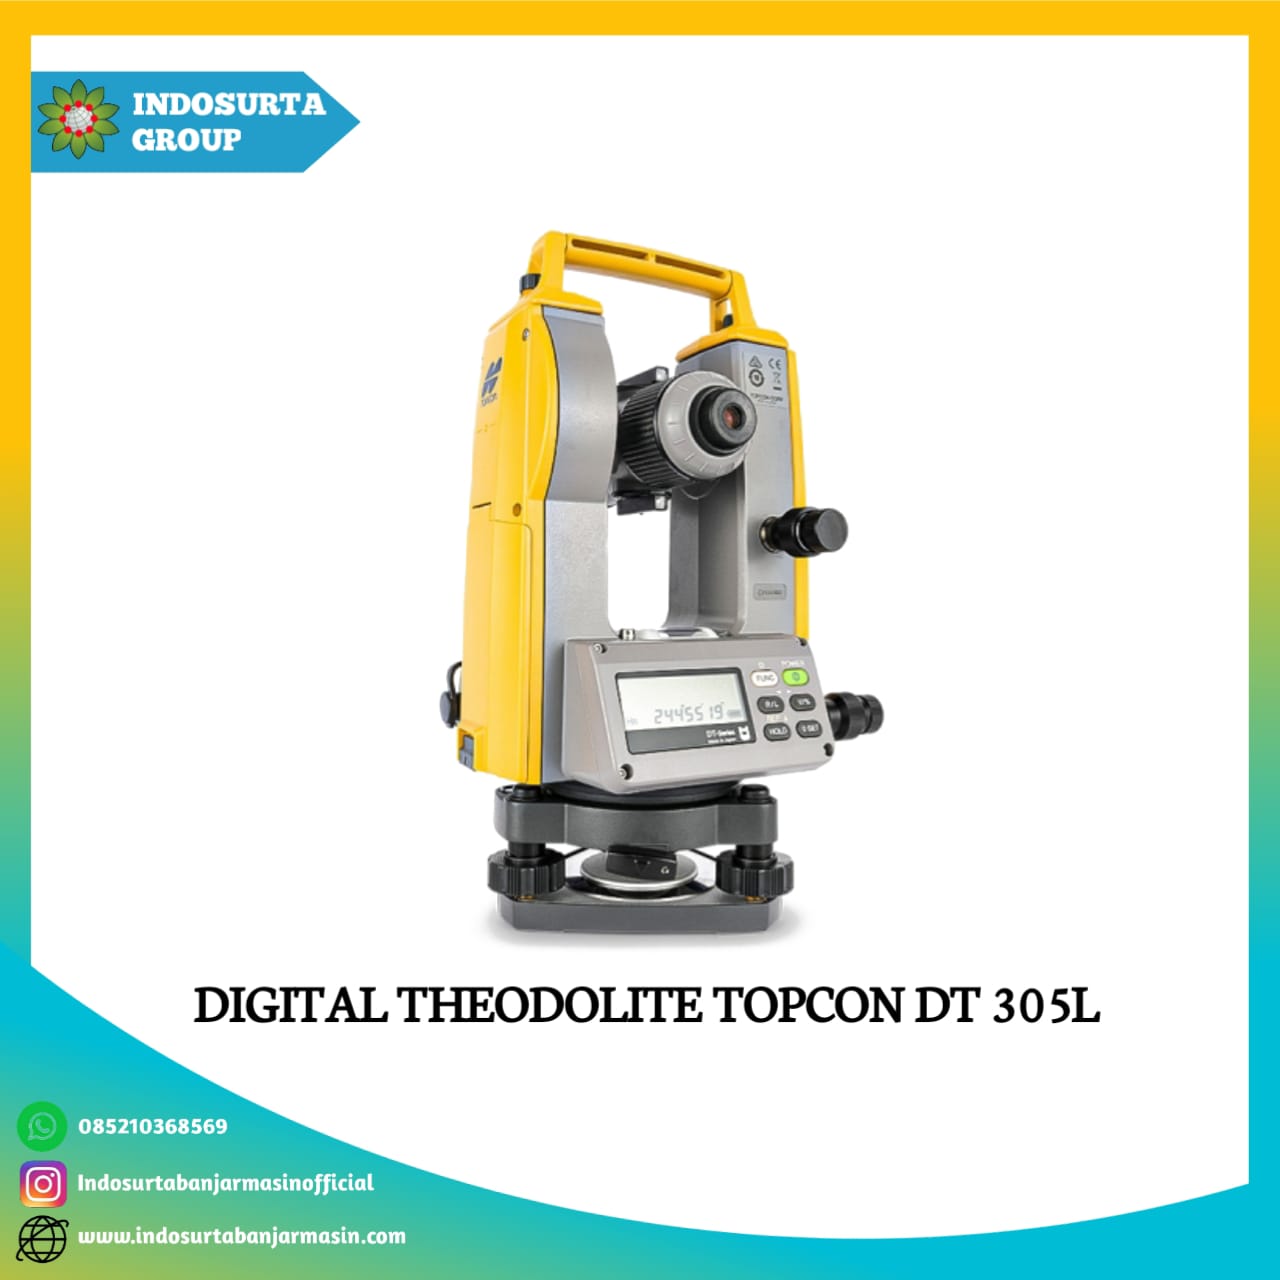 Digital Theodolite Topcon DT 305L